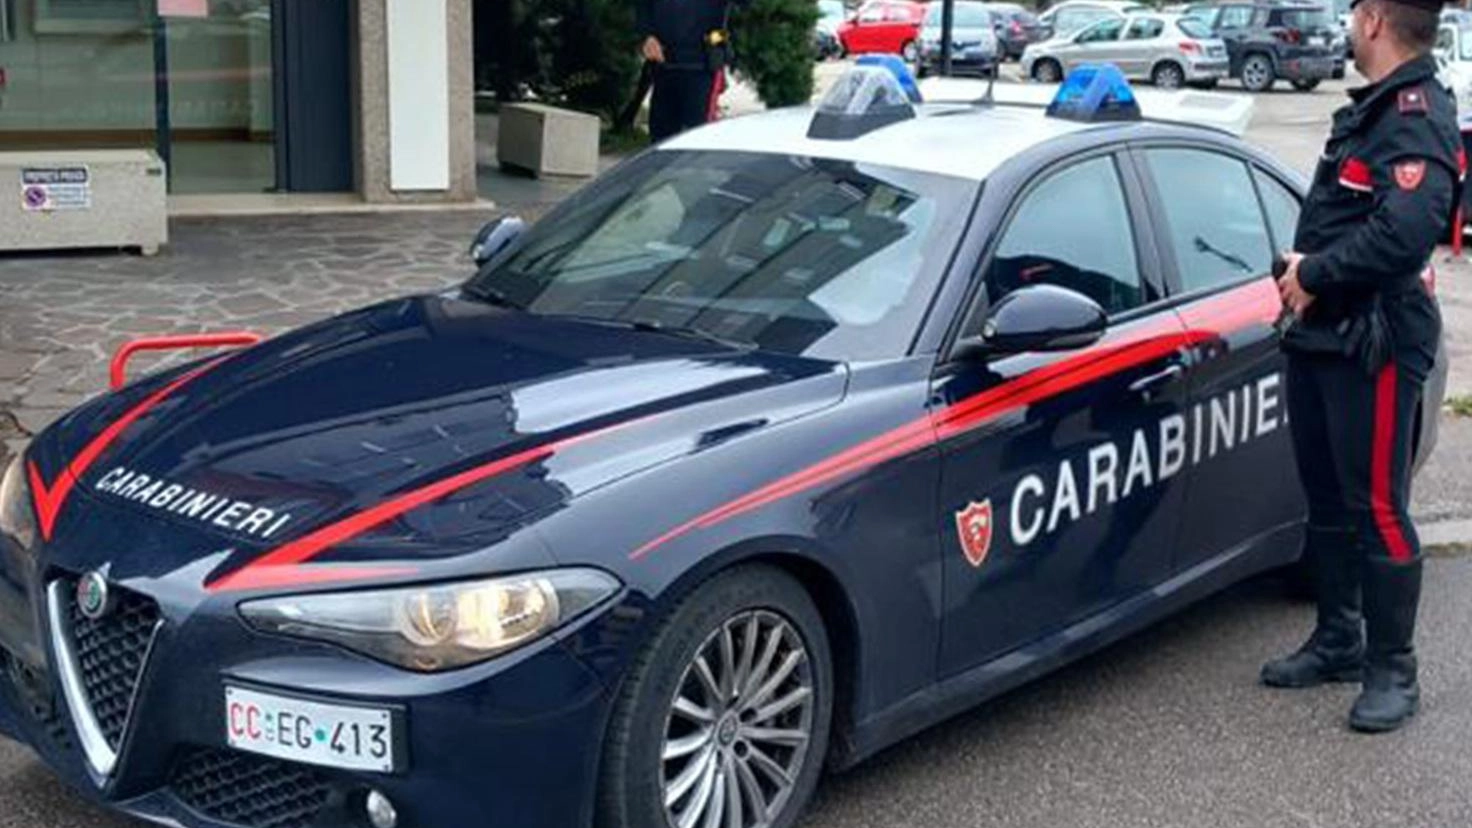 Maltrattamenti alle donne: "Picchia e minaccia la compagna". I carabinieri arrestano 30enne